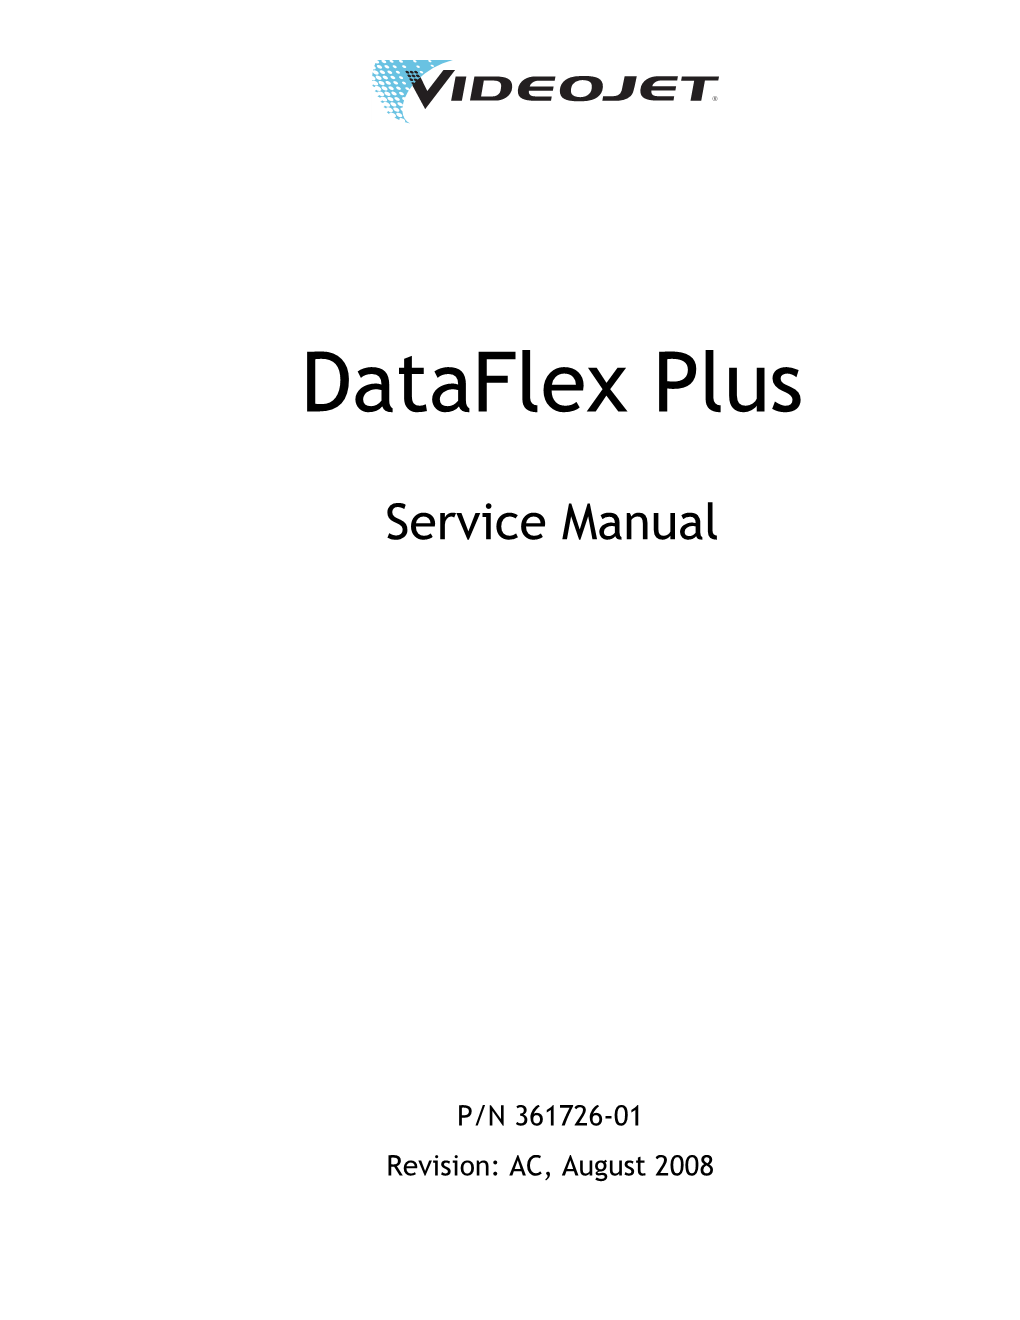 Dataflex Plus Service Manual.Book